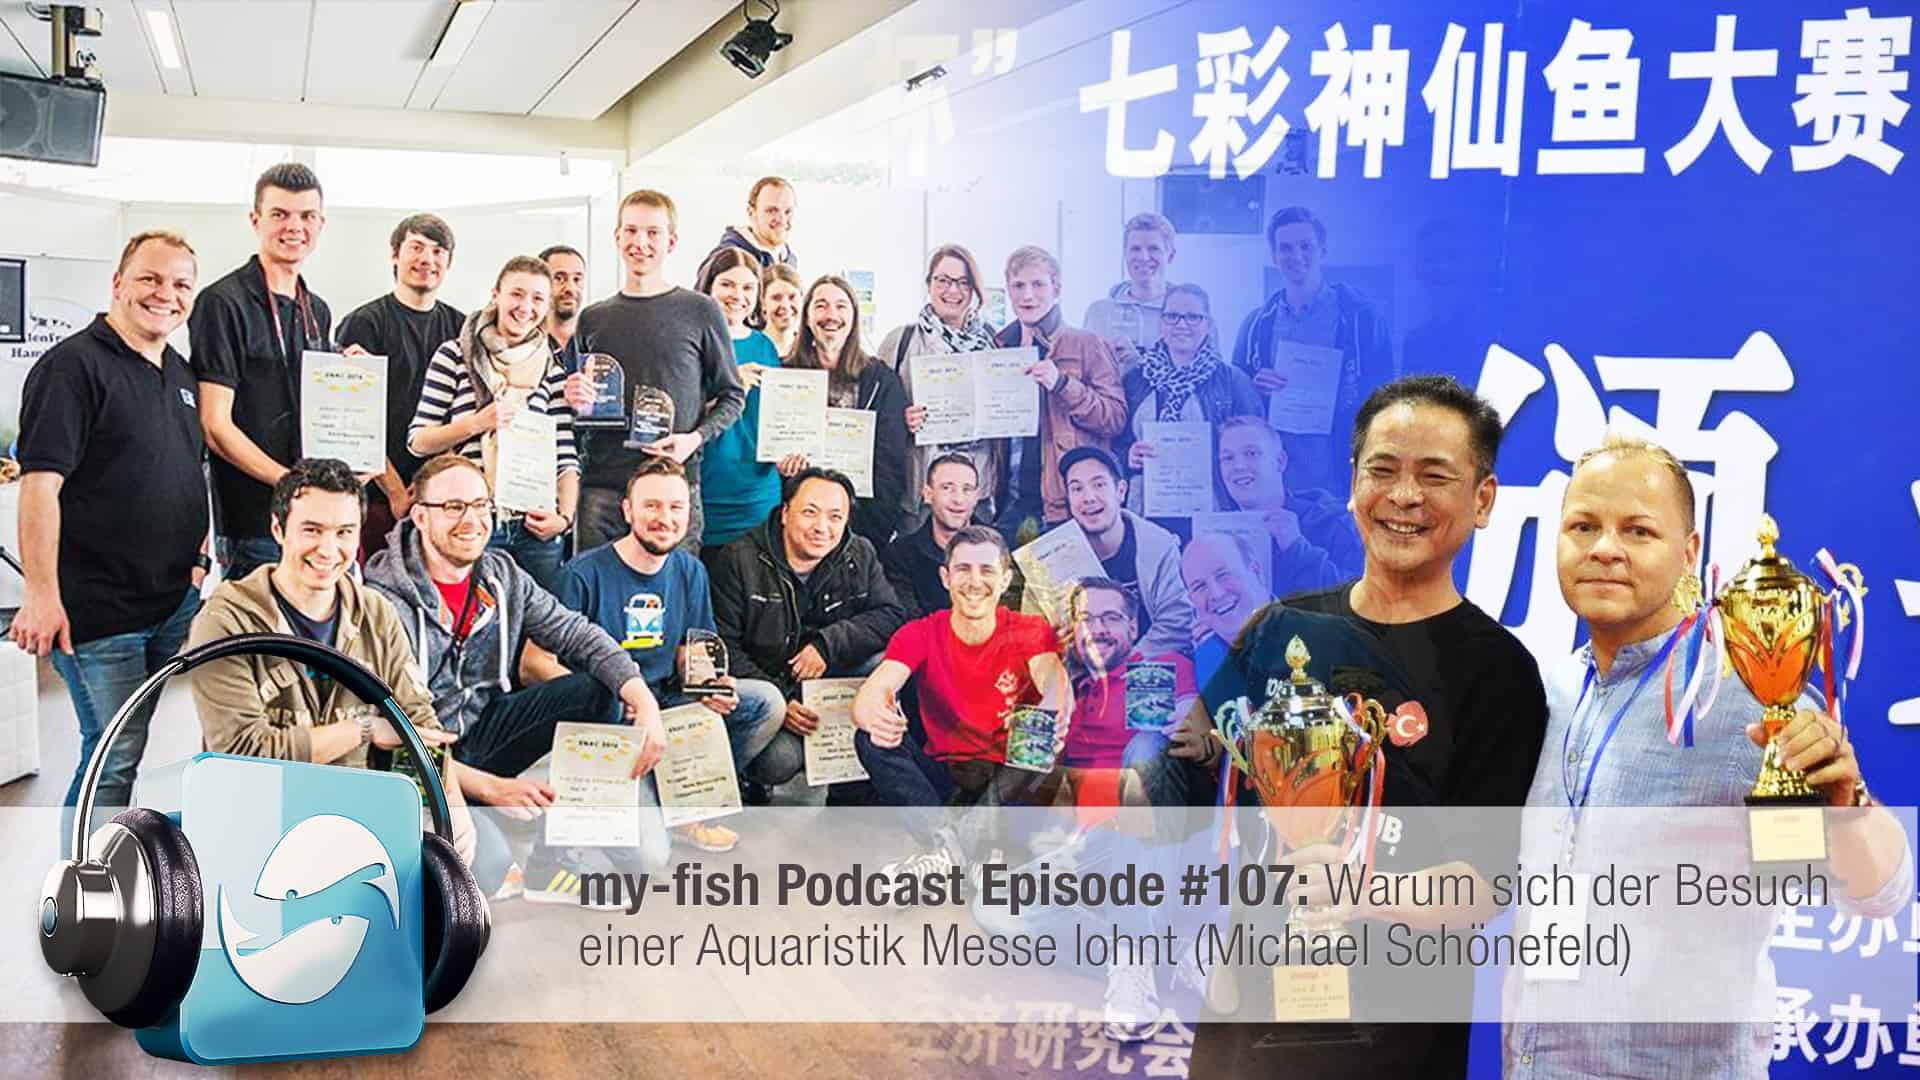 Podcast Episode #107: Warum sich der Besuch einer Aquaristik Messe lohnt (Michael Schönefeld)